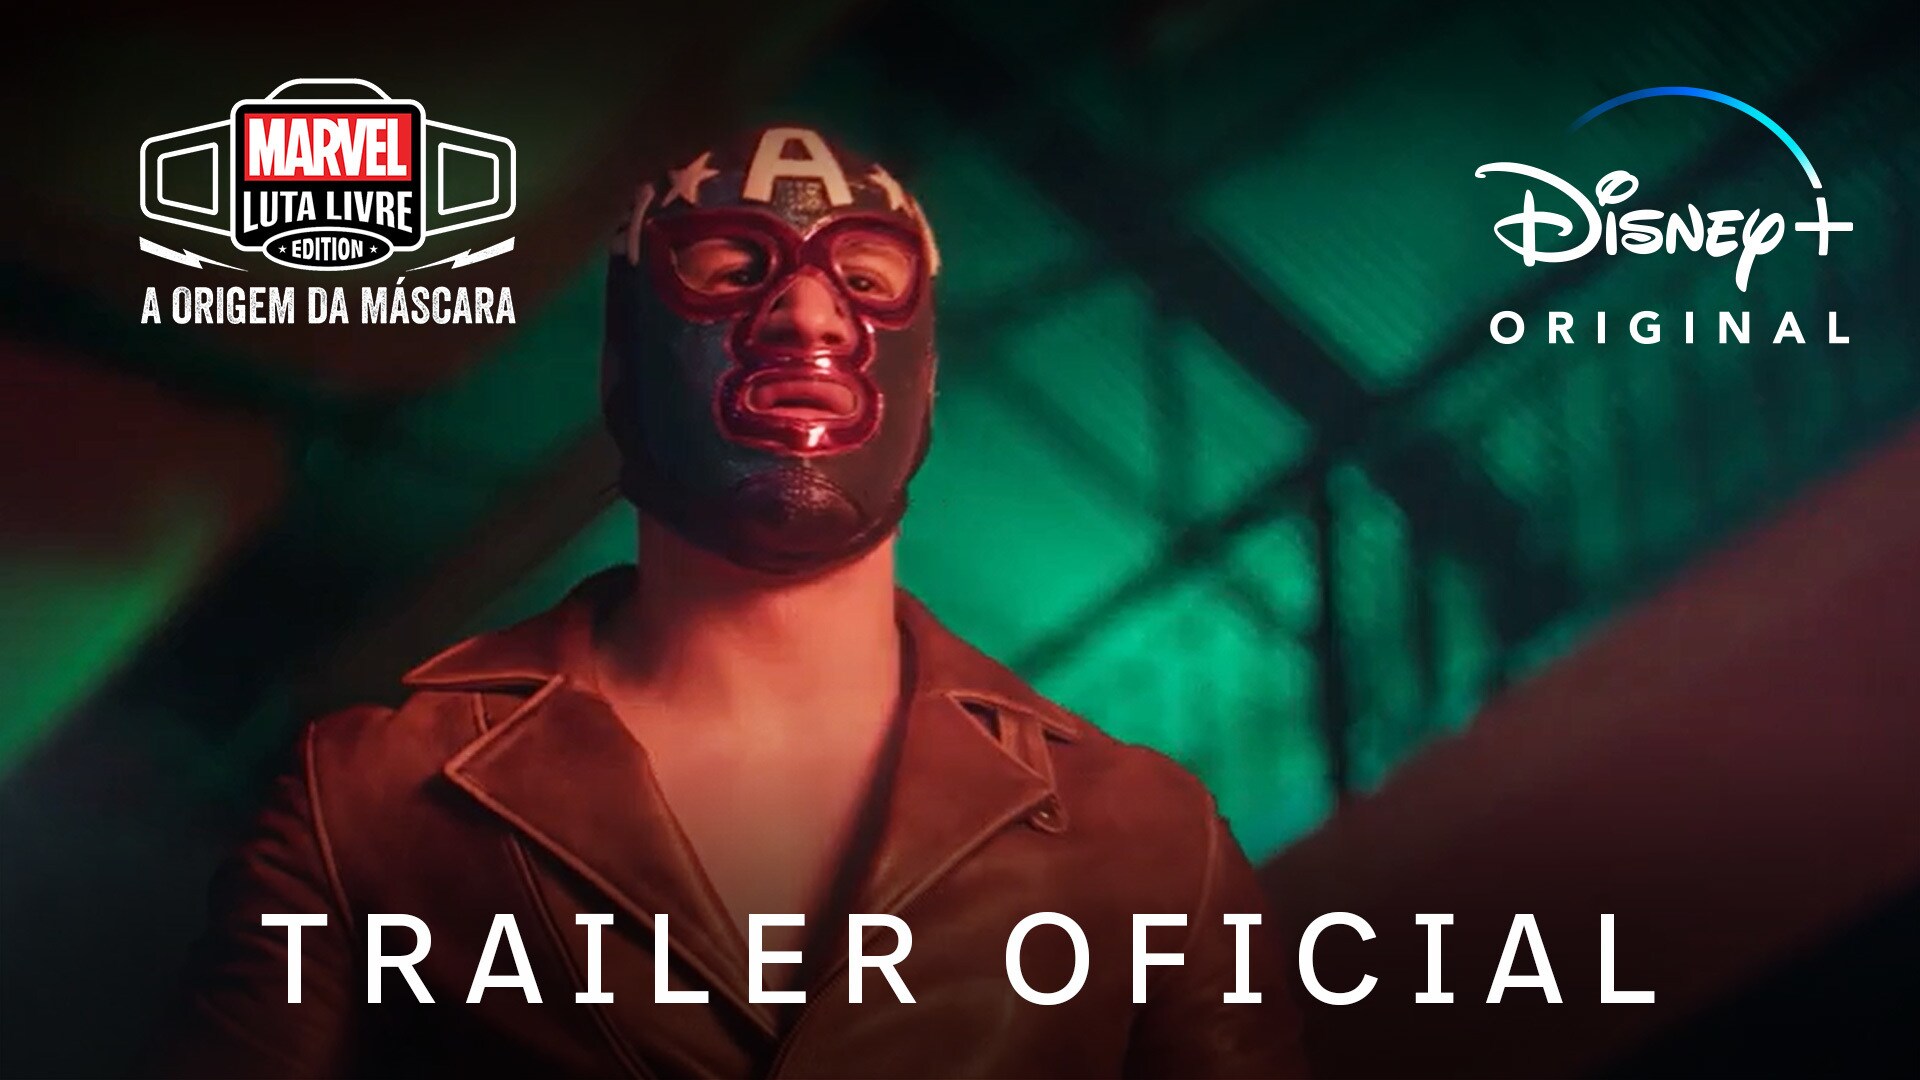 'Marvel Luta Livre Edition: A Origem da Máscara' | Trailer Oficial | Disney+